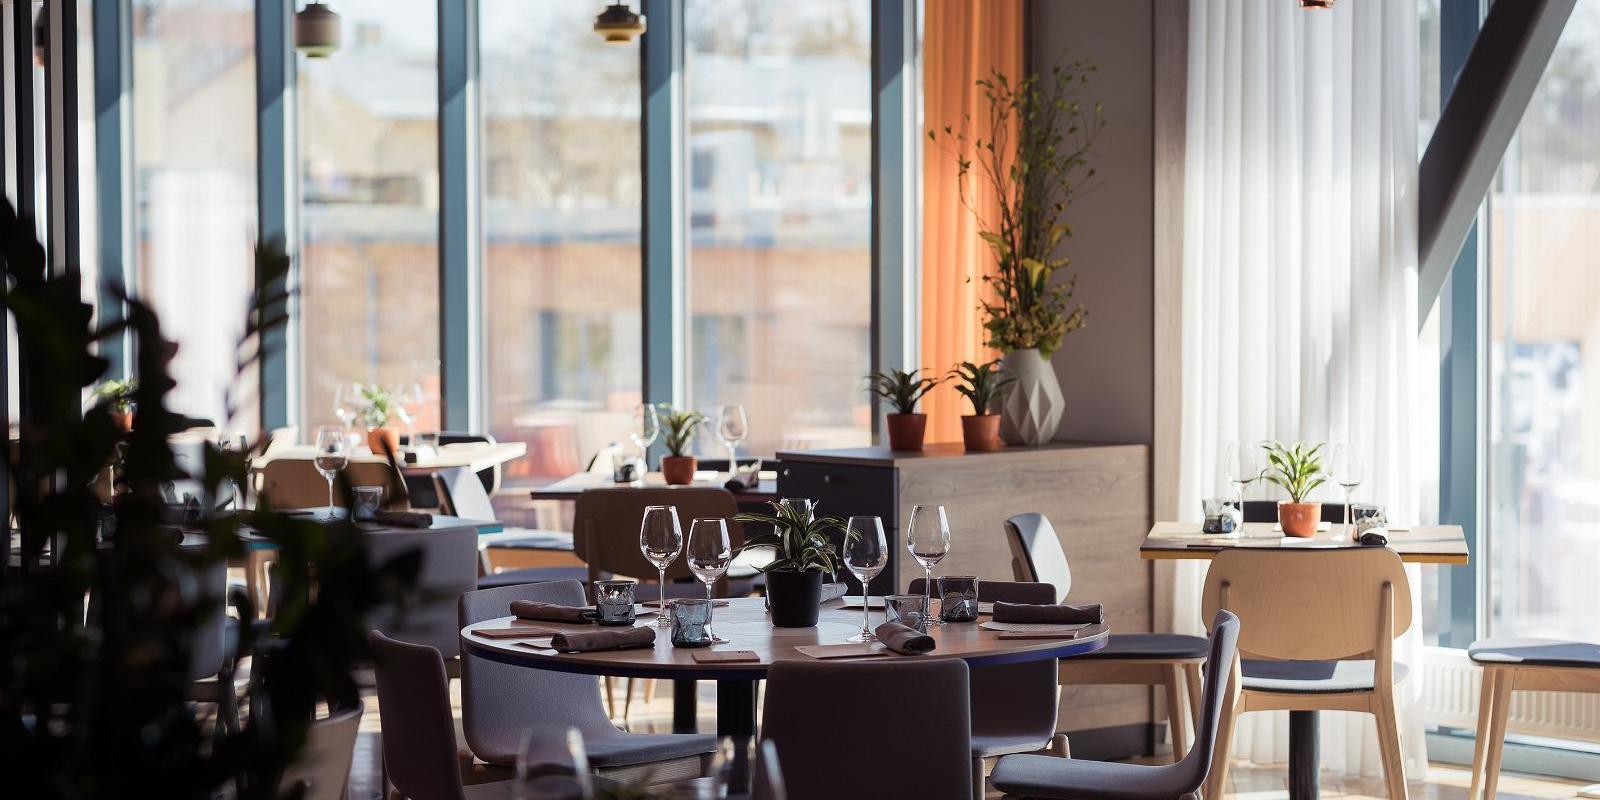 Das Menü des Restaurants Fii kombiniert die besten Geschmackselemente der skandinavischen Küche und anderer Nationalküchen vereinigt haben. Wir verwen